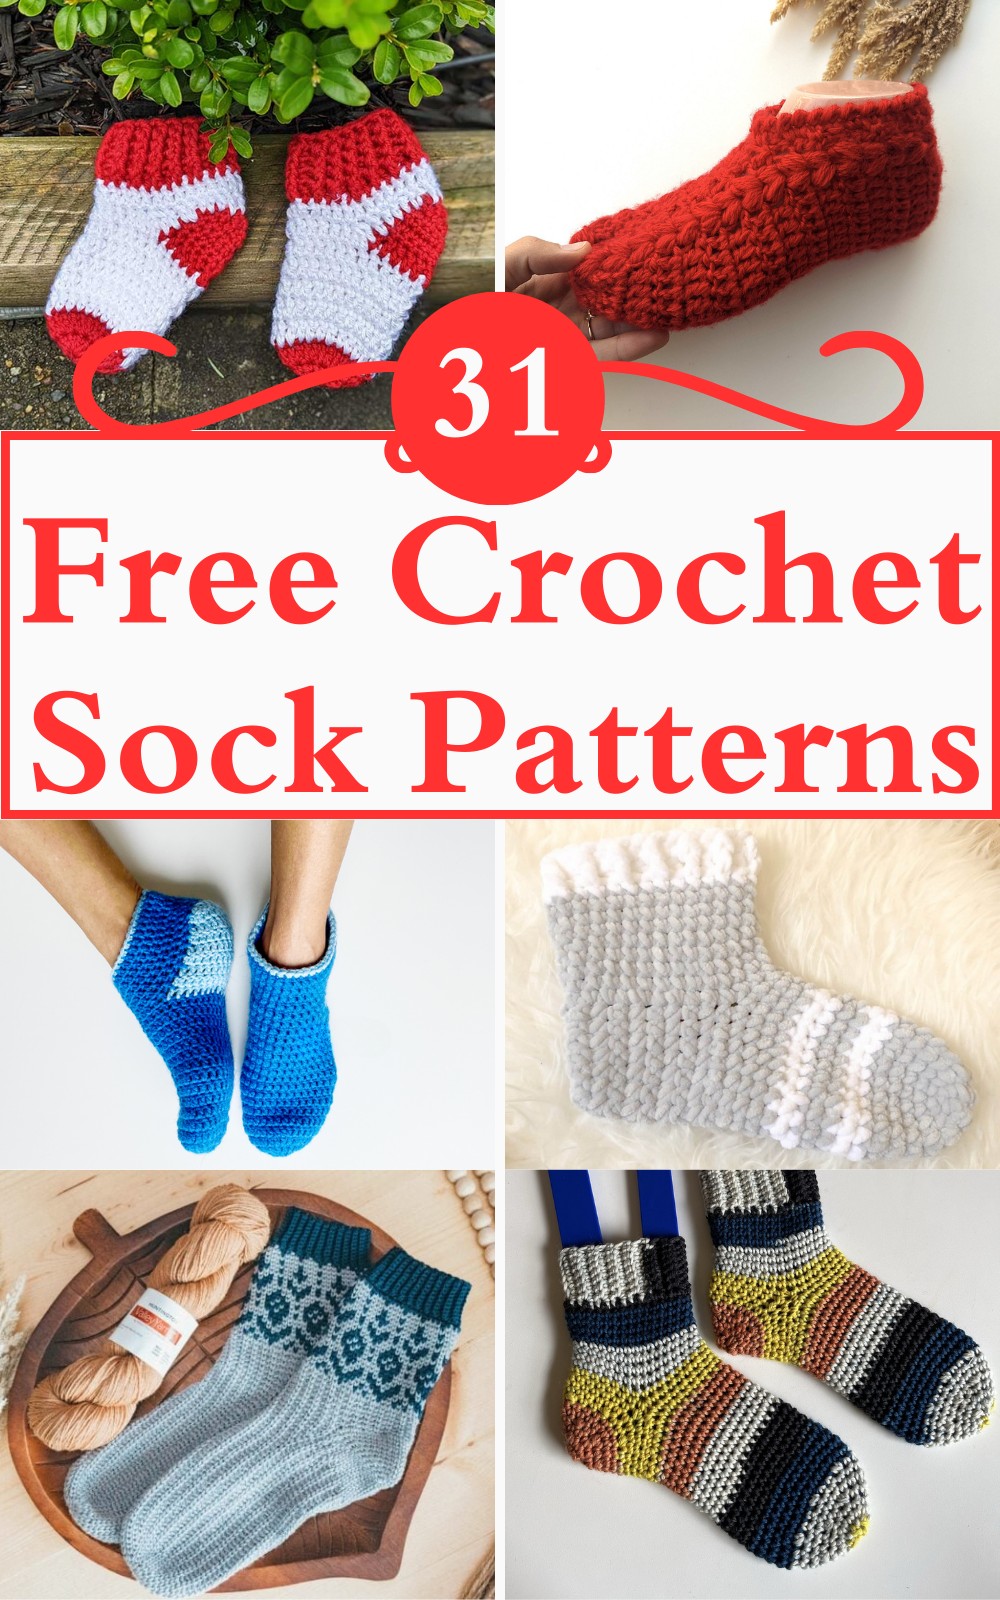 31 Free Crochet Sock Patterns